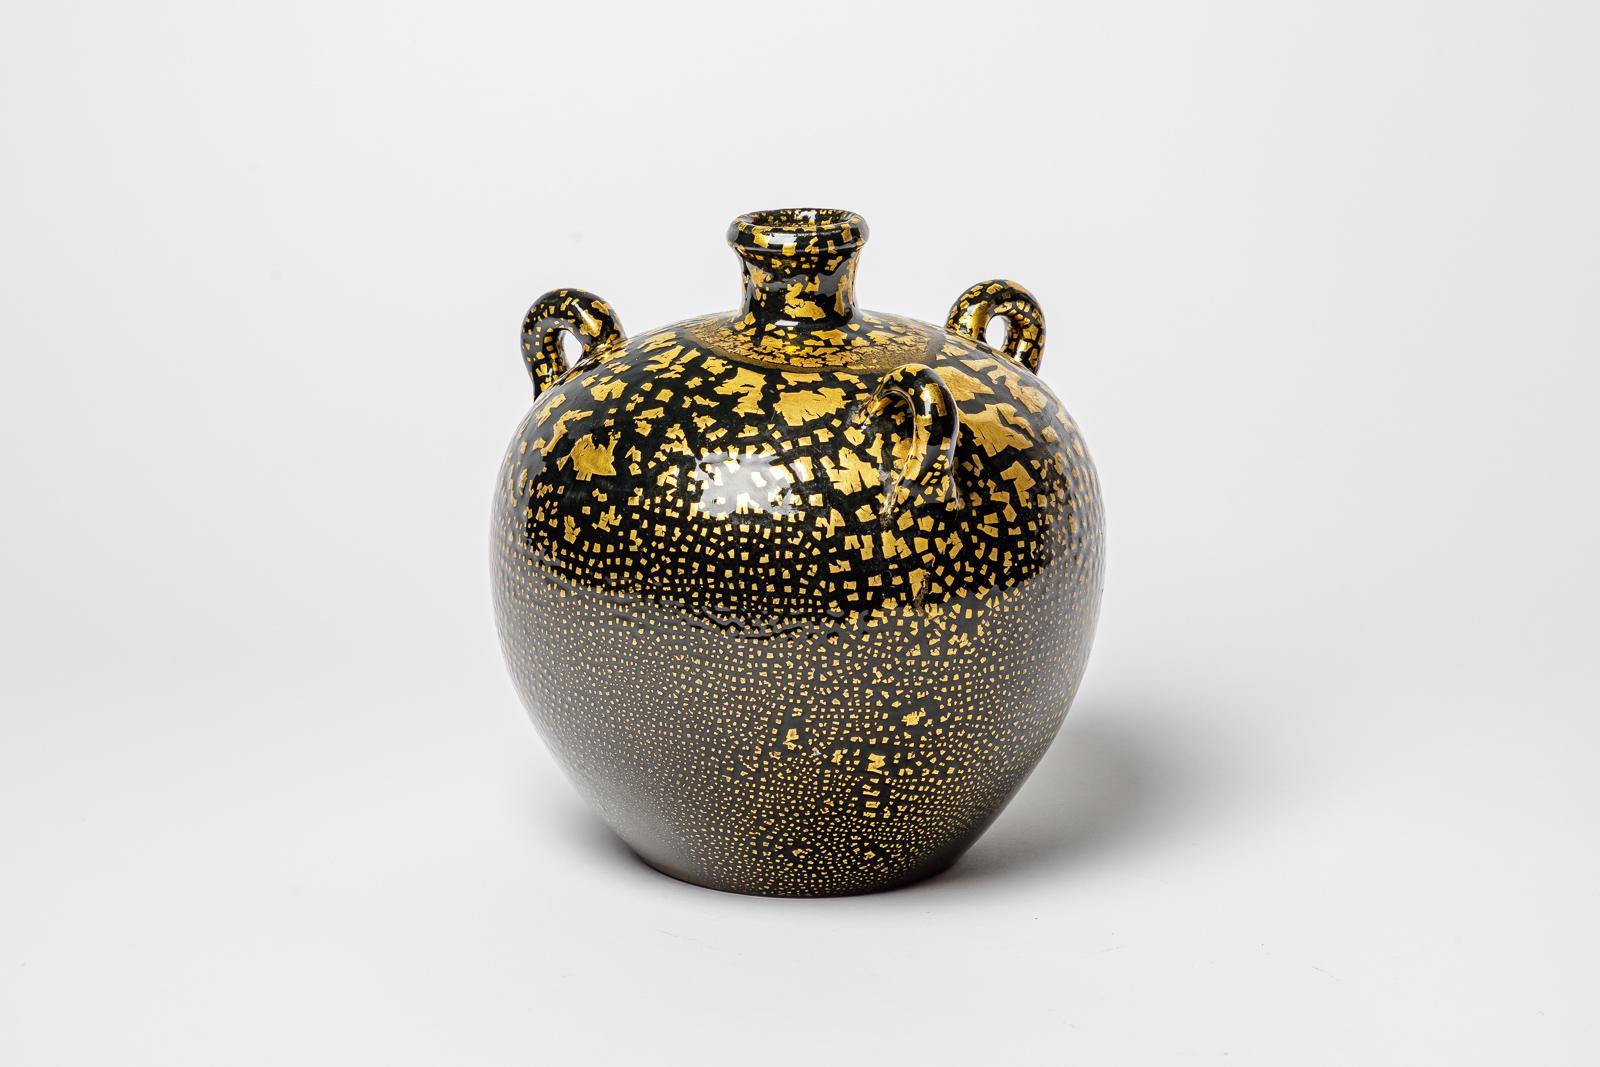 Vase en céramique émaillée noir et or dans le style de Jean Besnard.
Vers 1950-1960.
H : 10.6' x 8.7' pouces.